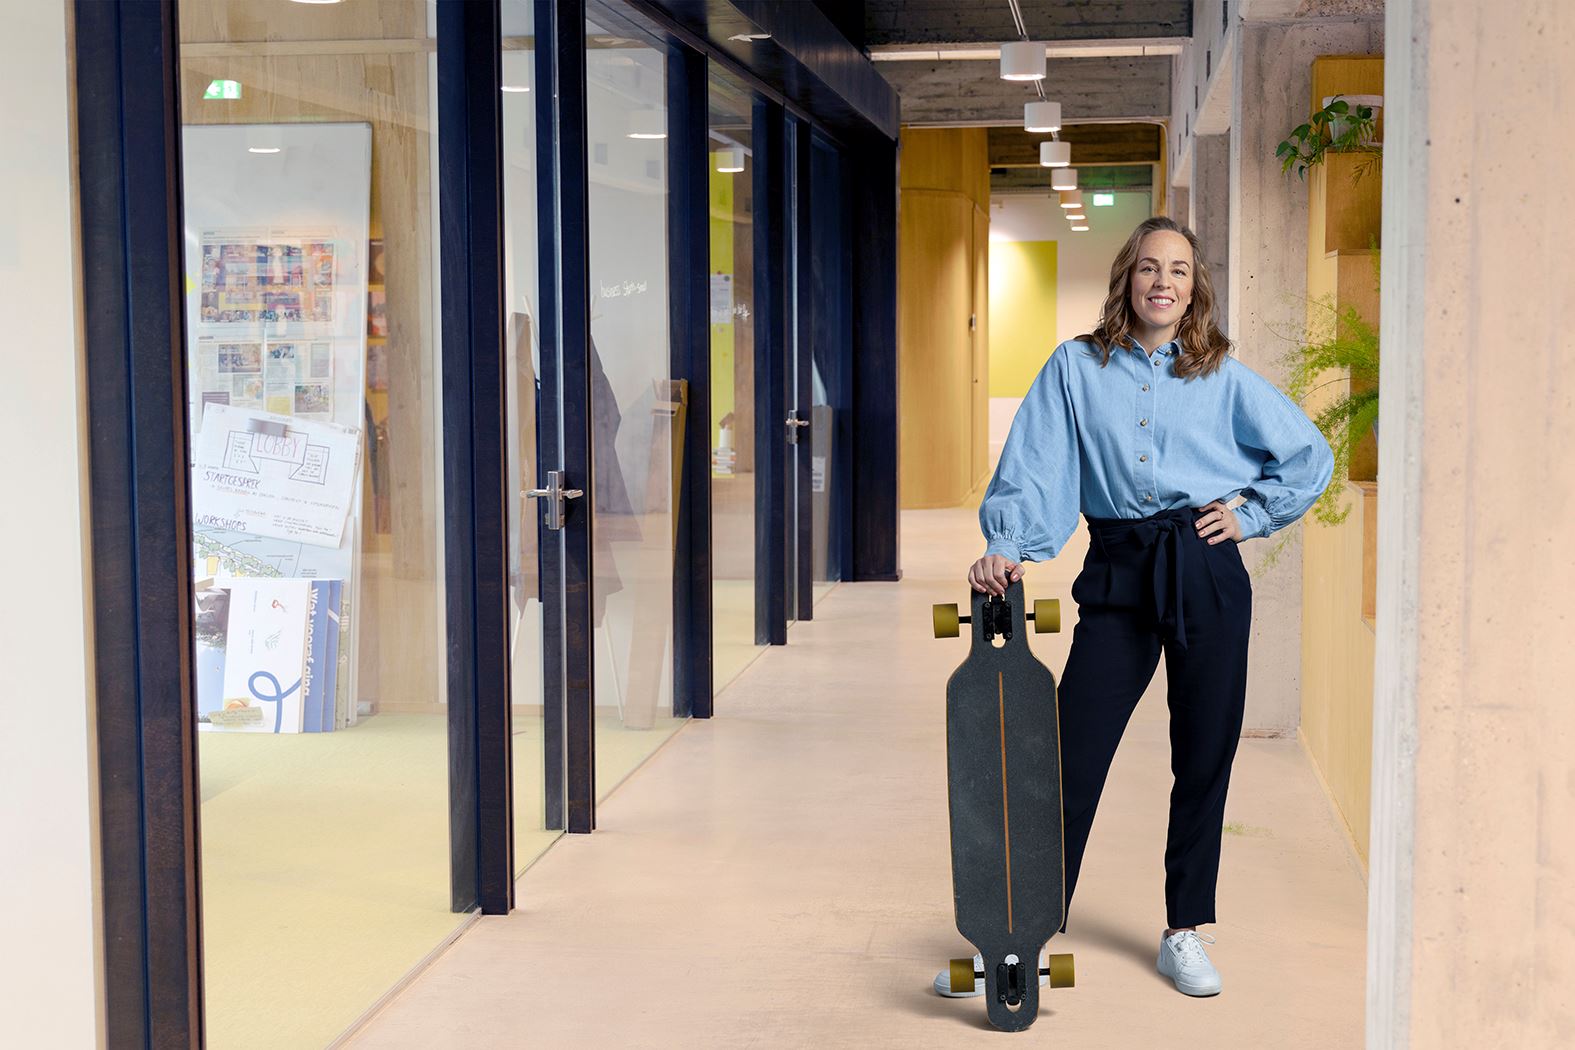 Een vrouw staat met een longboard in een kantorenpand.